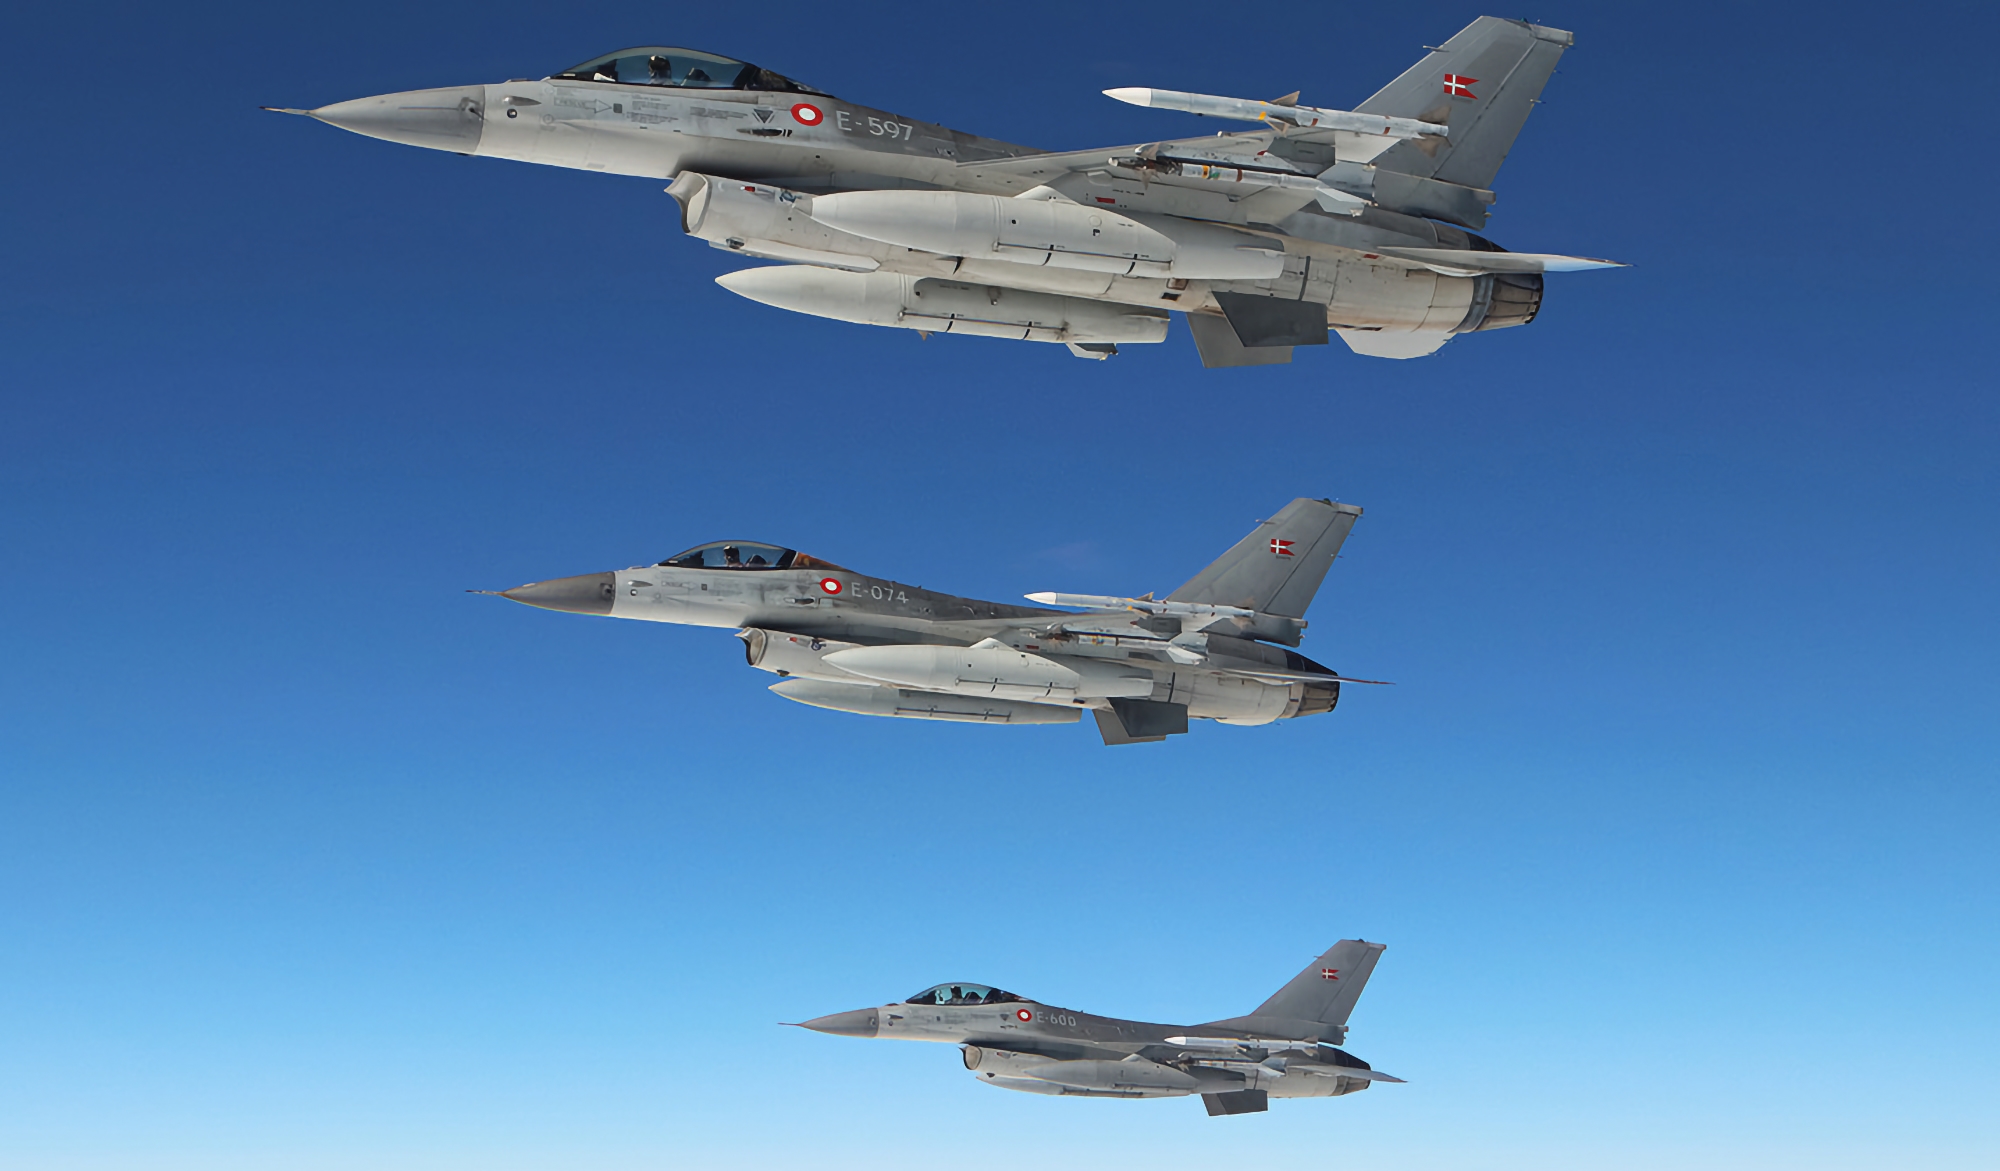 Danmark överlämnar första leveransen av F-16 Fighting Falcon till Ukraina inom en månad